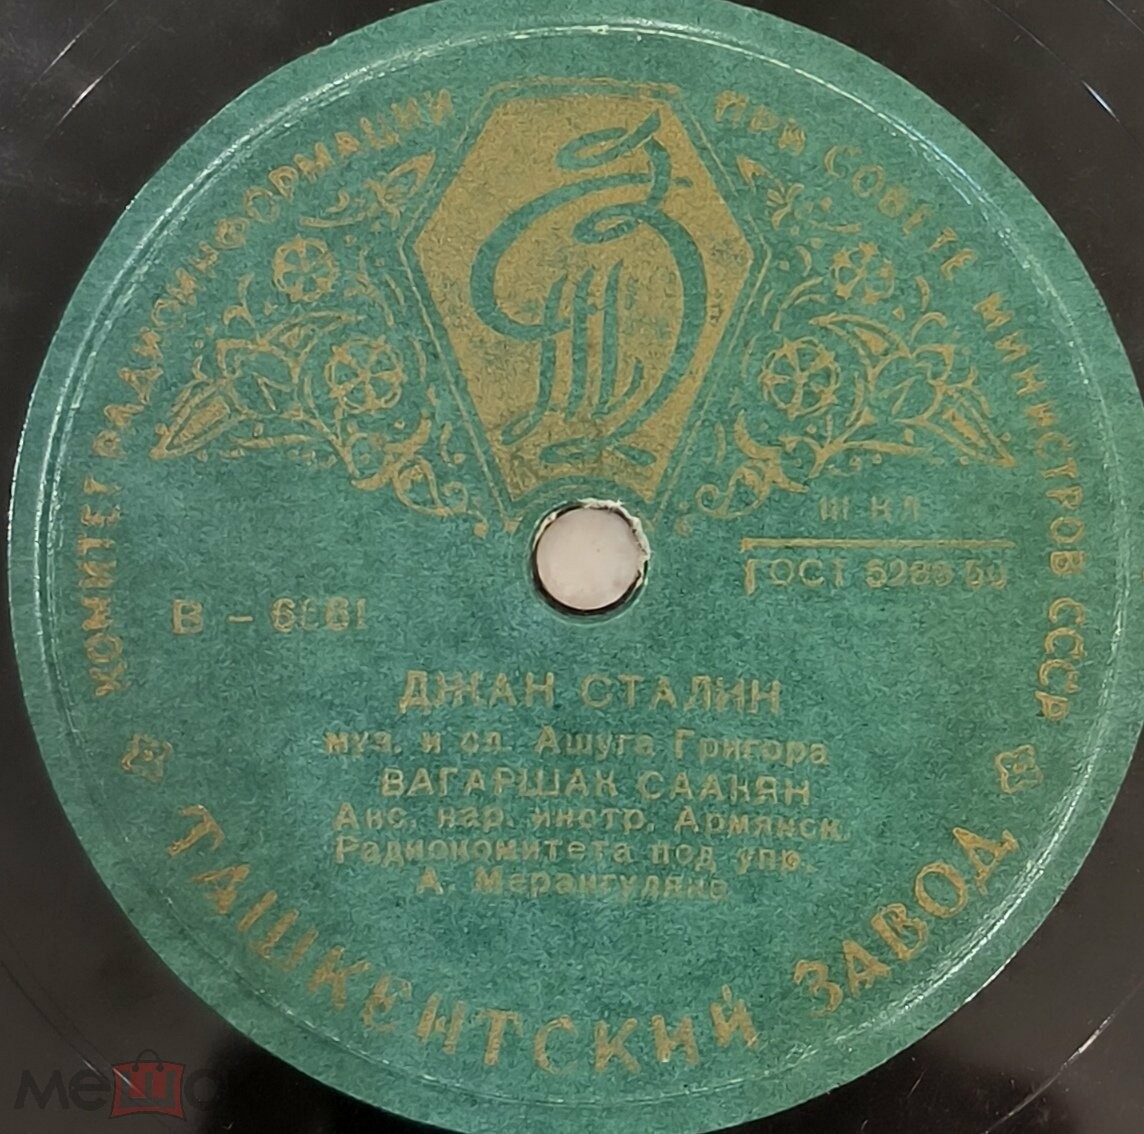 Джан Сталин / Анастасу Микояну (на армянском языке)